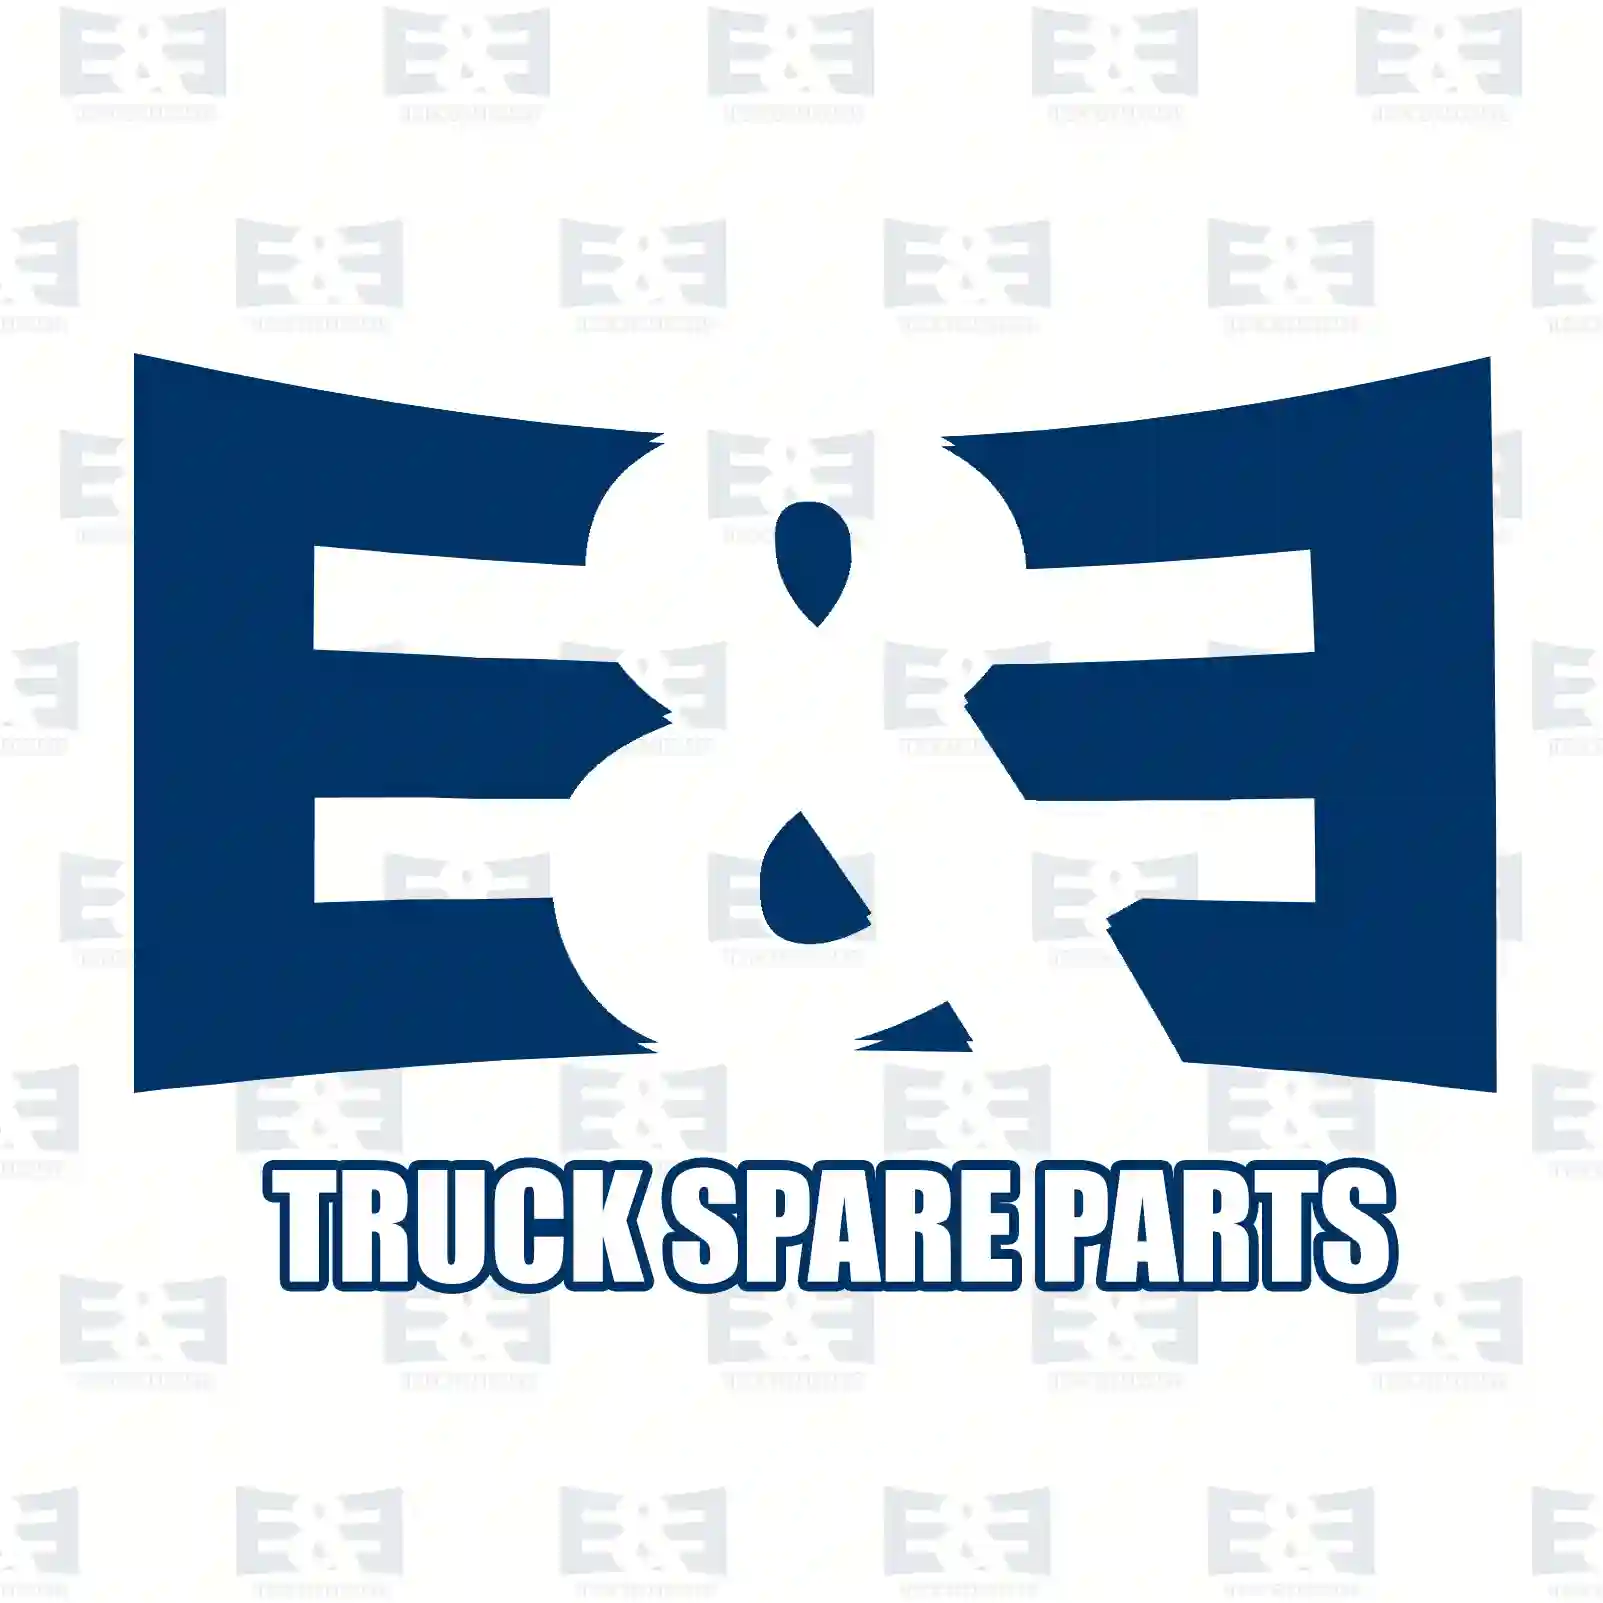 Gasket, gearbox housing, 2E2277203, 1407551, ZG30495-0008 ||  2E2277203 E&E Truck Spare Parts | Truck Spare Parts, Auotomotive Spare Parts Gasket, gearbox housing, 2E2277203, 1407551, ZG30495-0008 ||  2E2277203 E&E Truck Spare Parts | Truck Spare Parts, Auotomotive Spare Parts